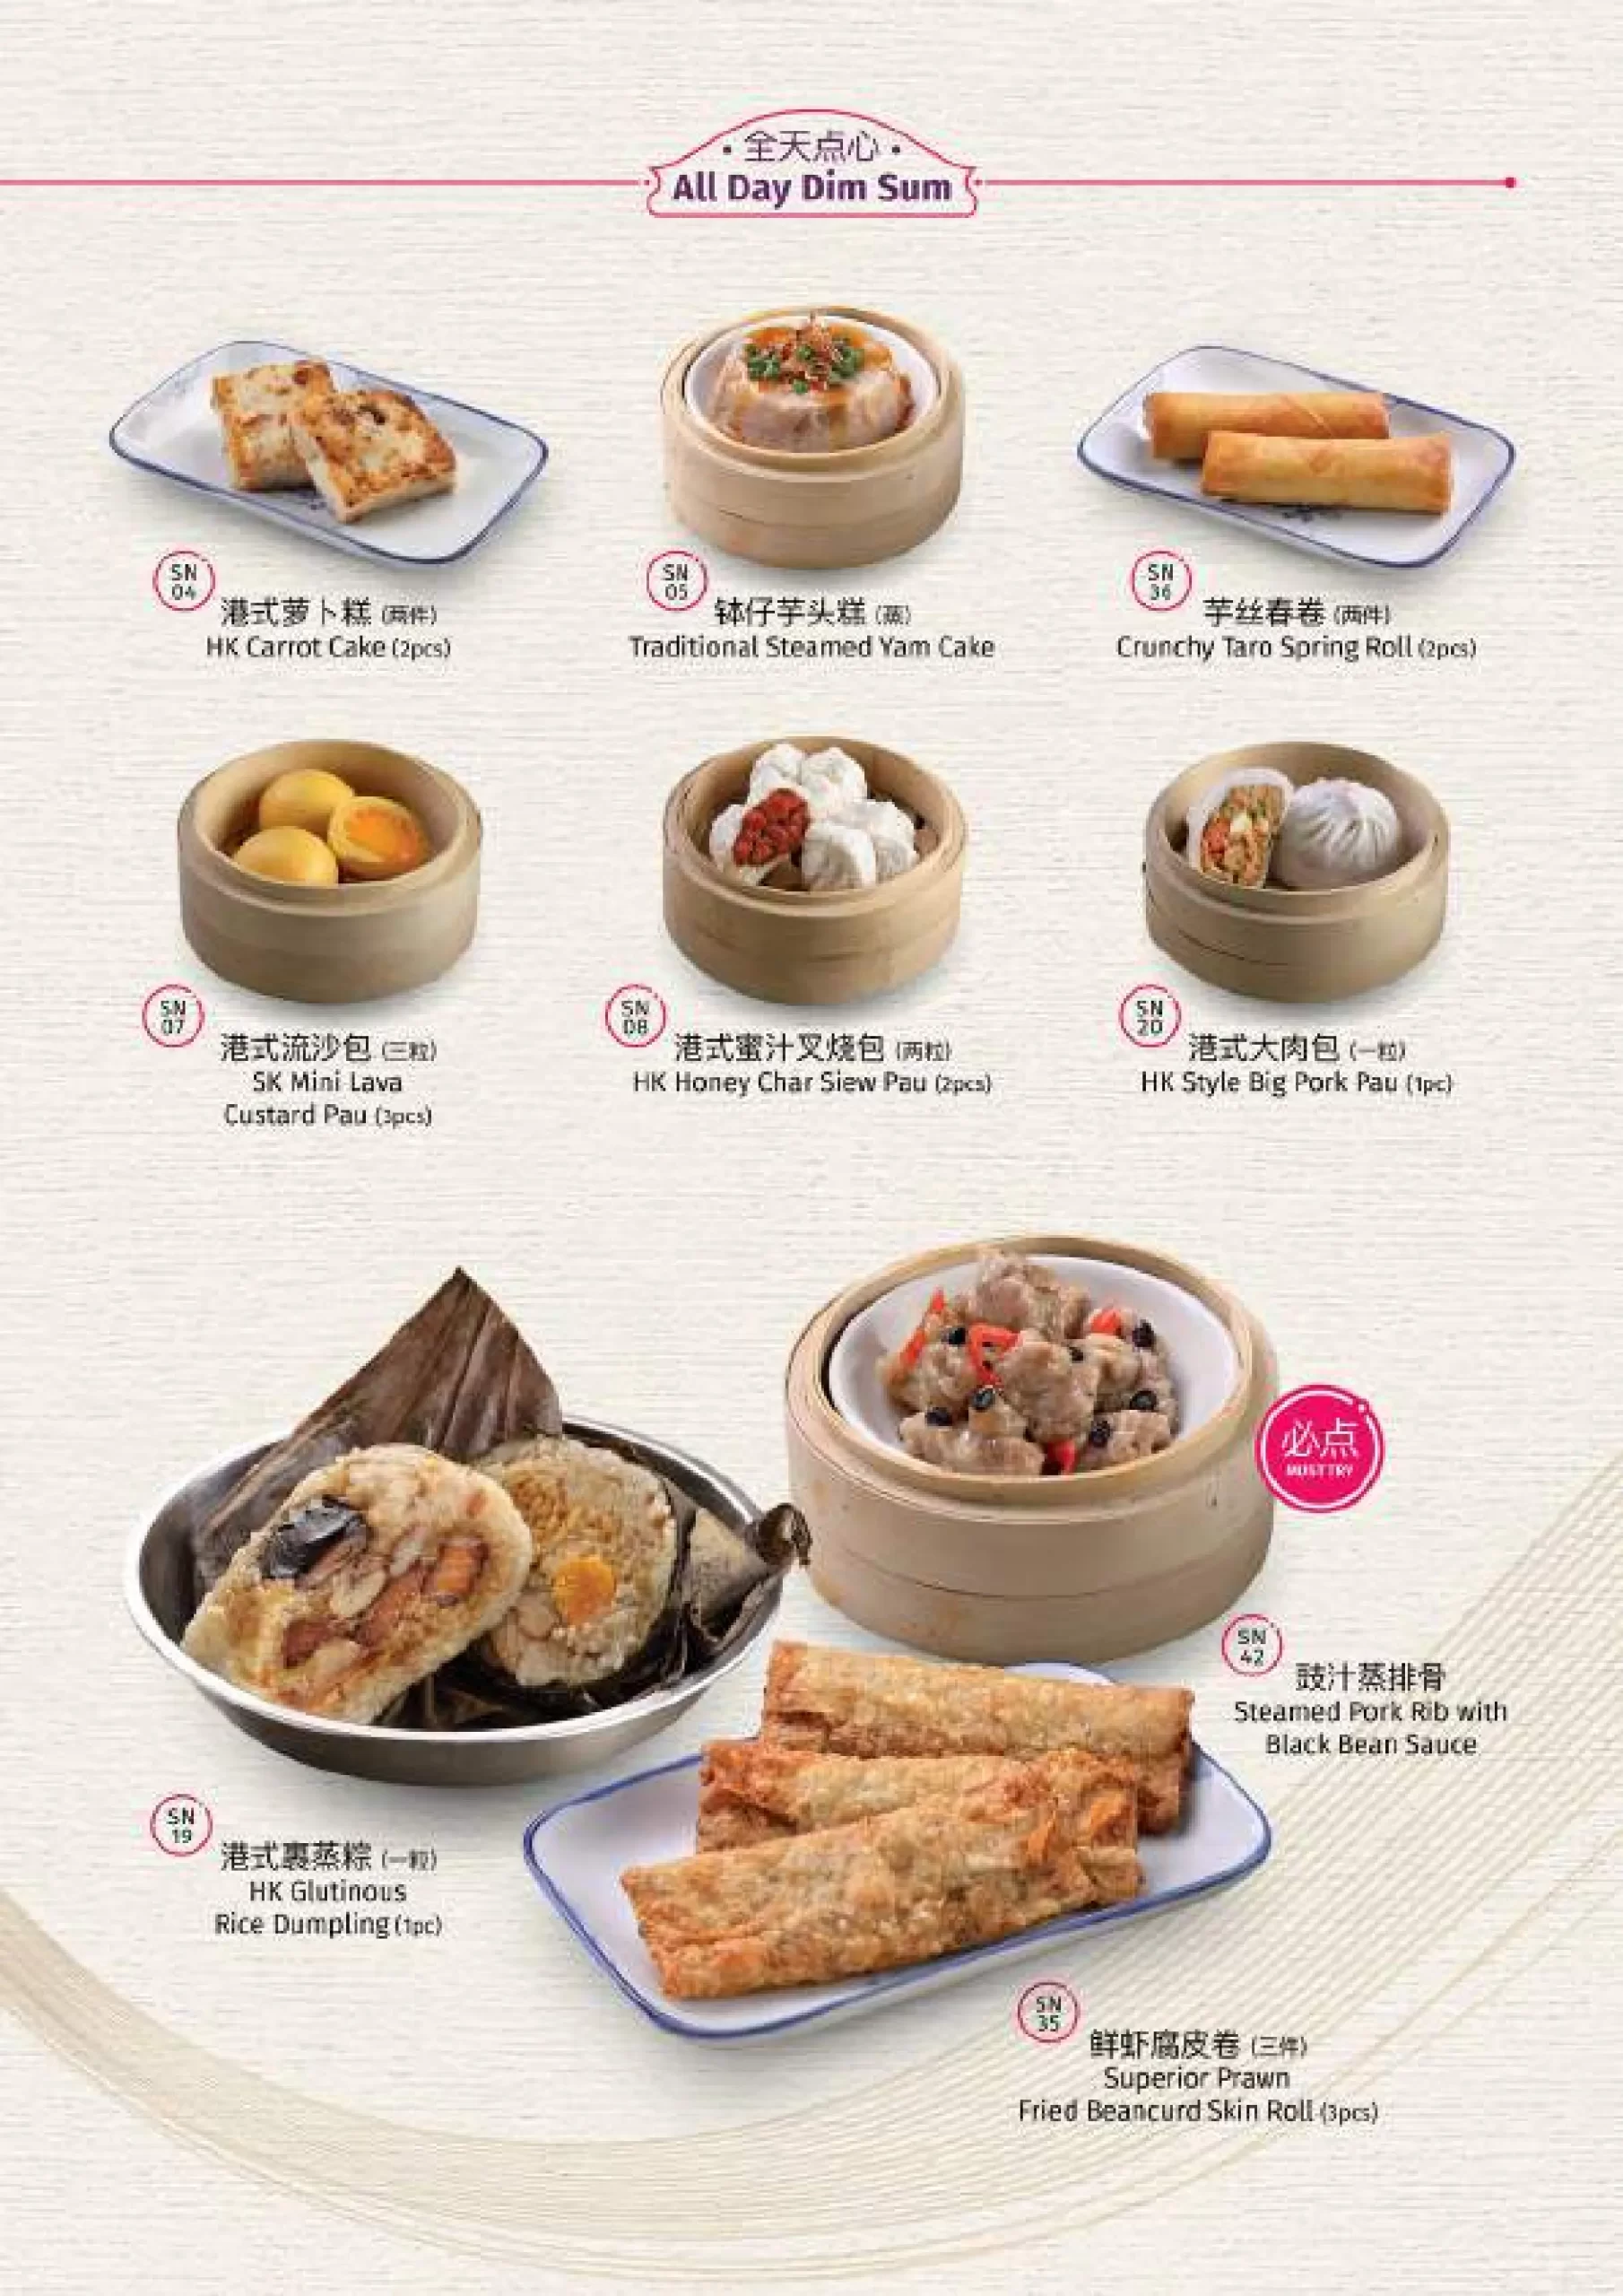 Hong Kong Sheng Kee dim sum menu